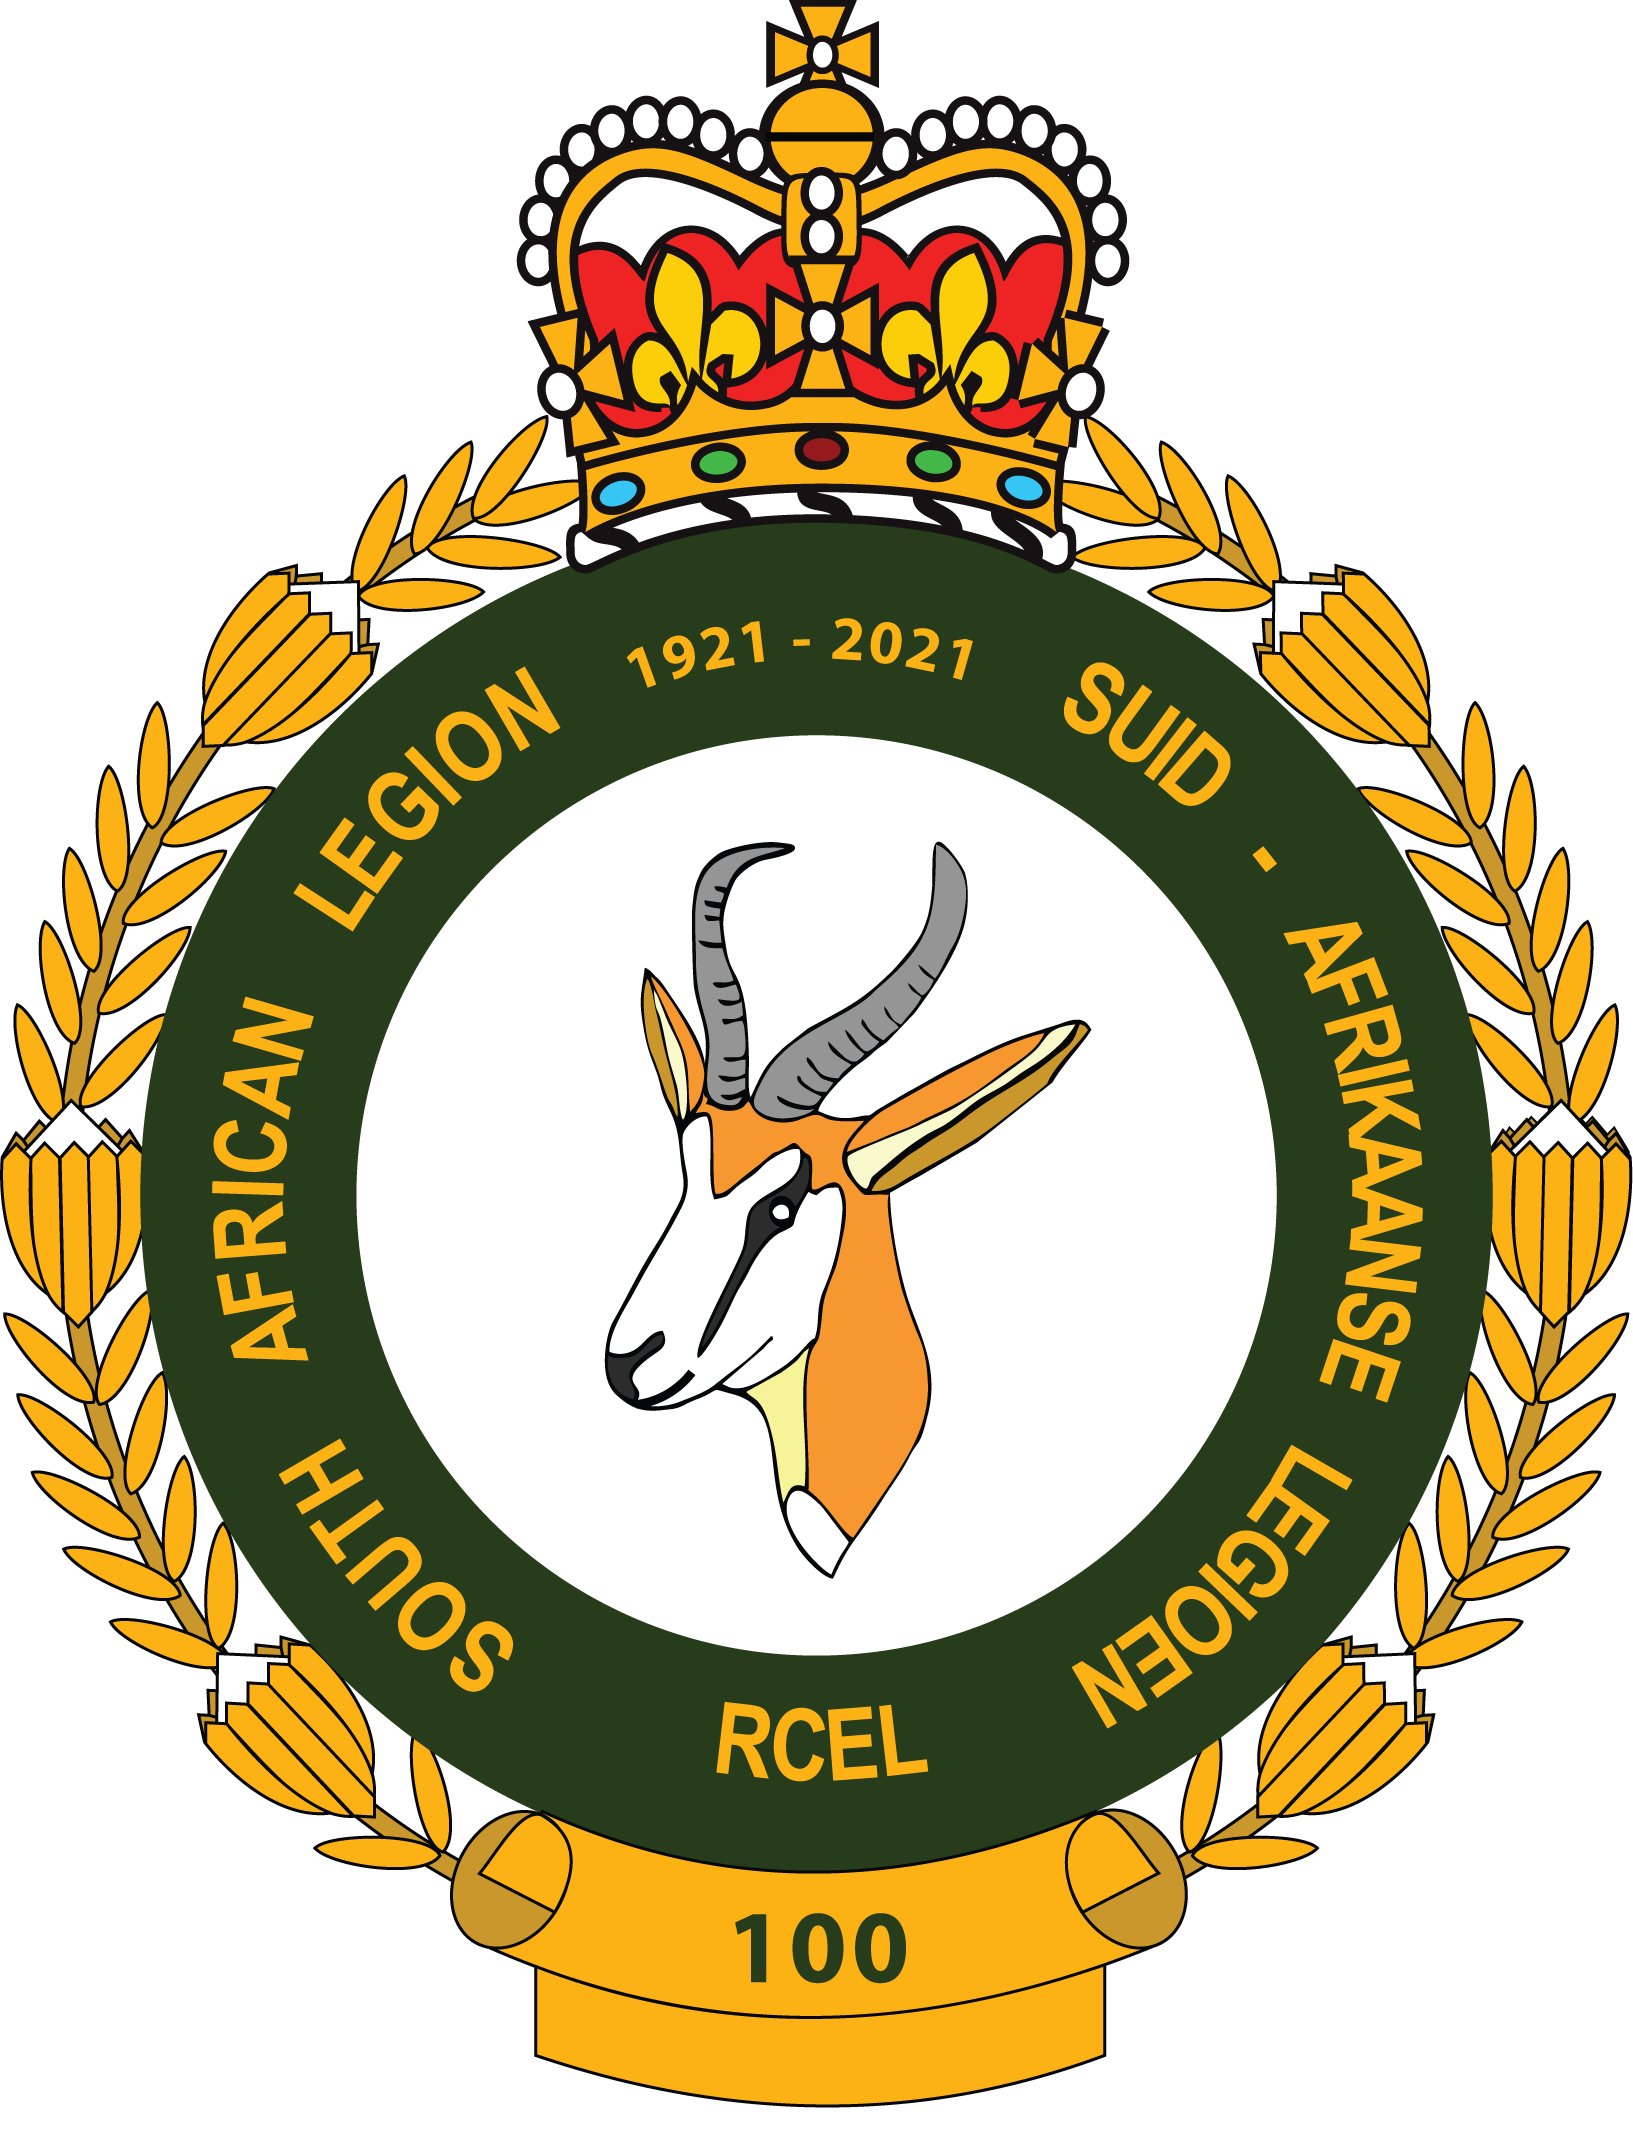 South African Legion – United Kingdom & Europe